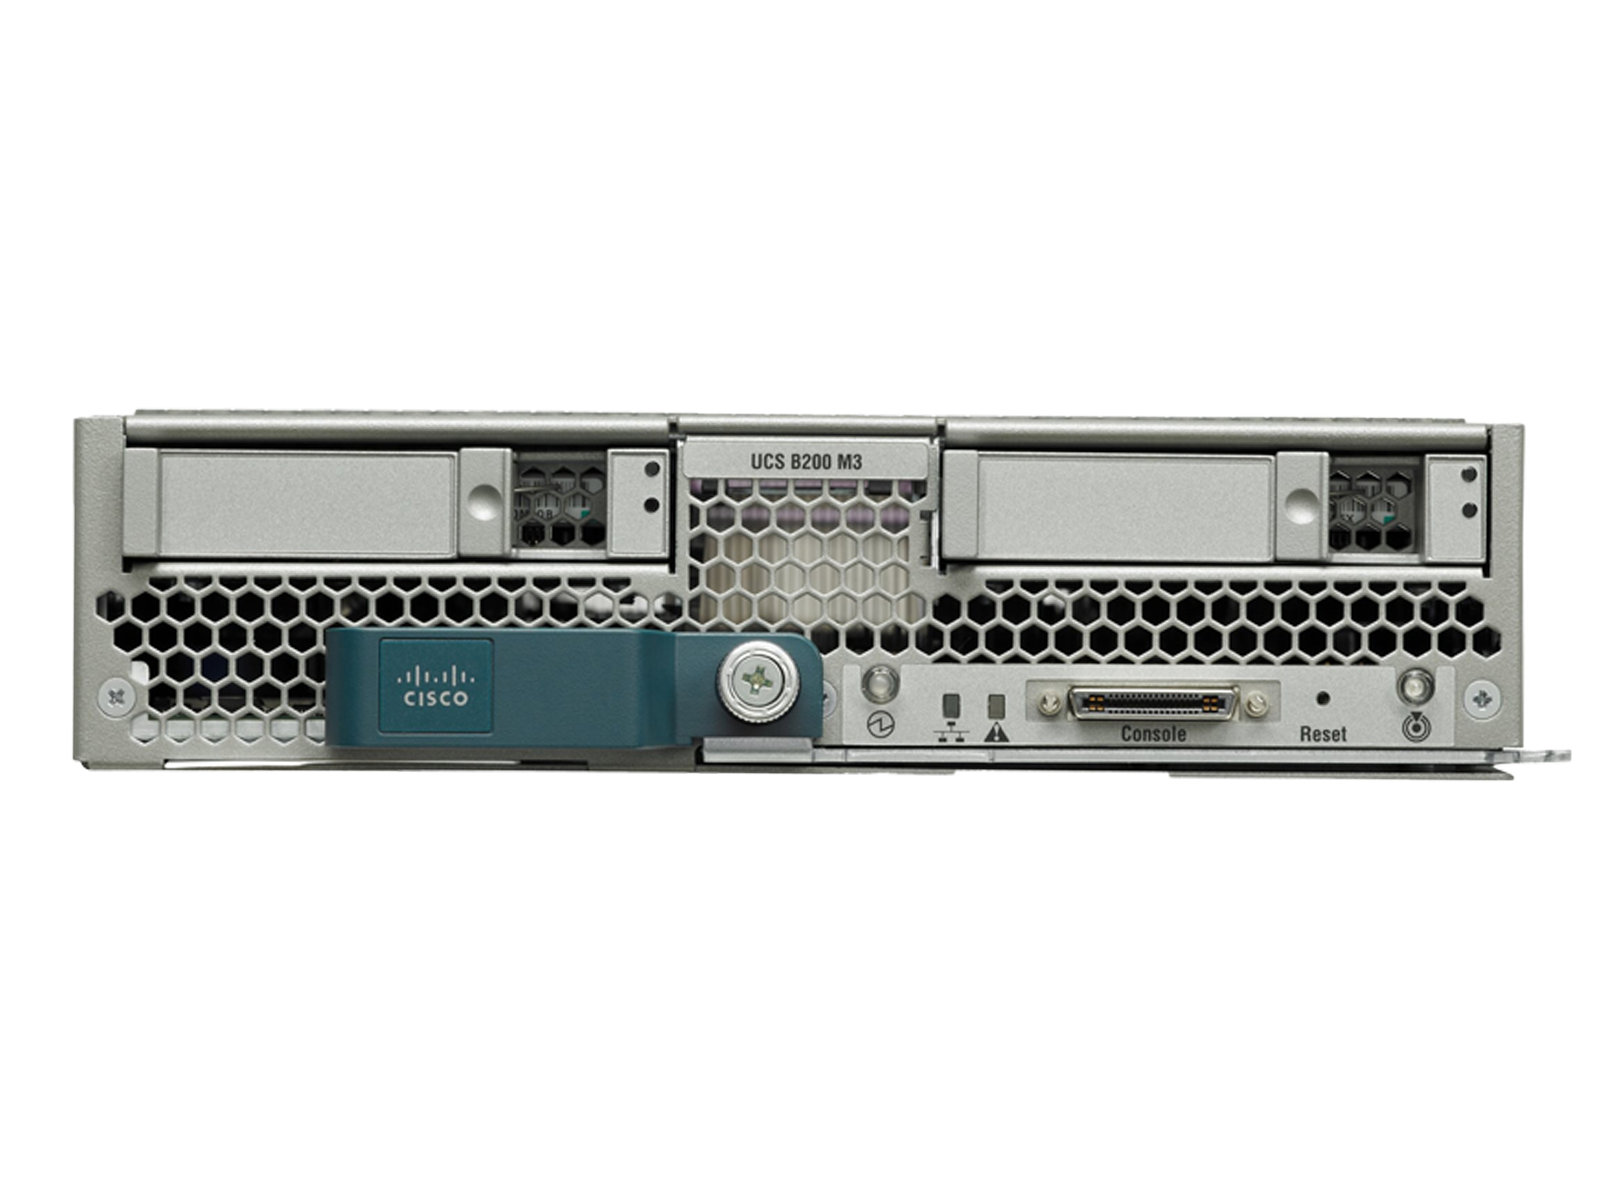 Cisco B200 M3 Two E5-2667 6C 8x 16GB-128GB Ram Blade Server VIC1240 12C 2x SFF.